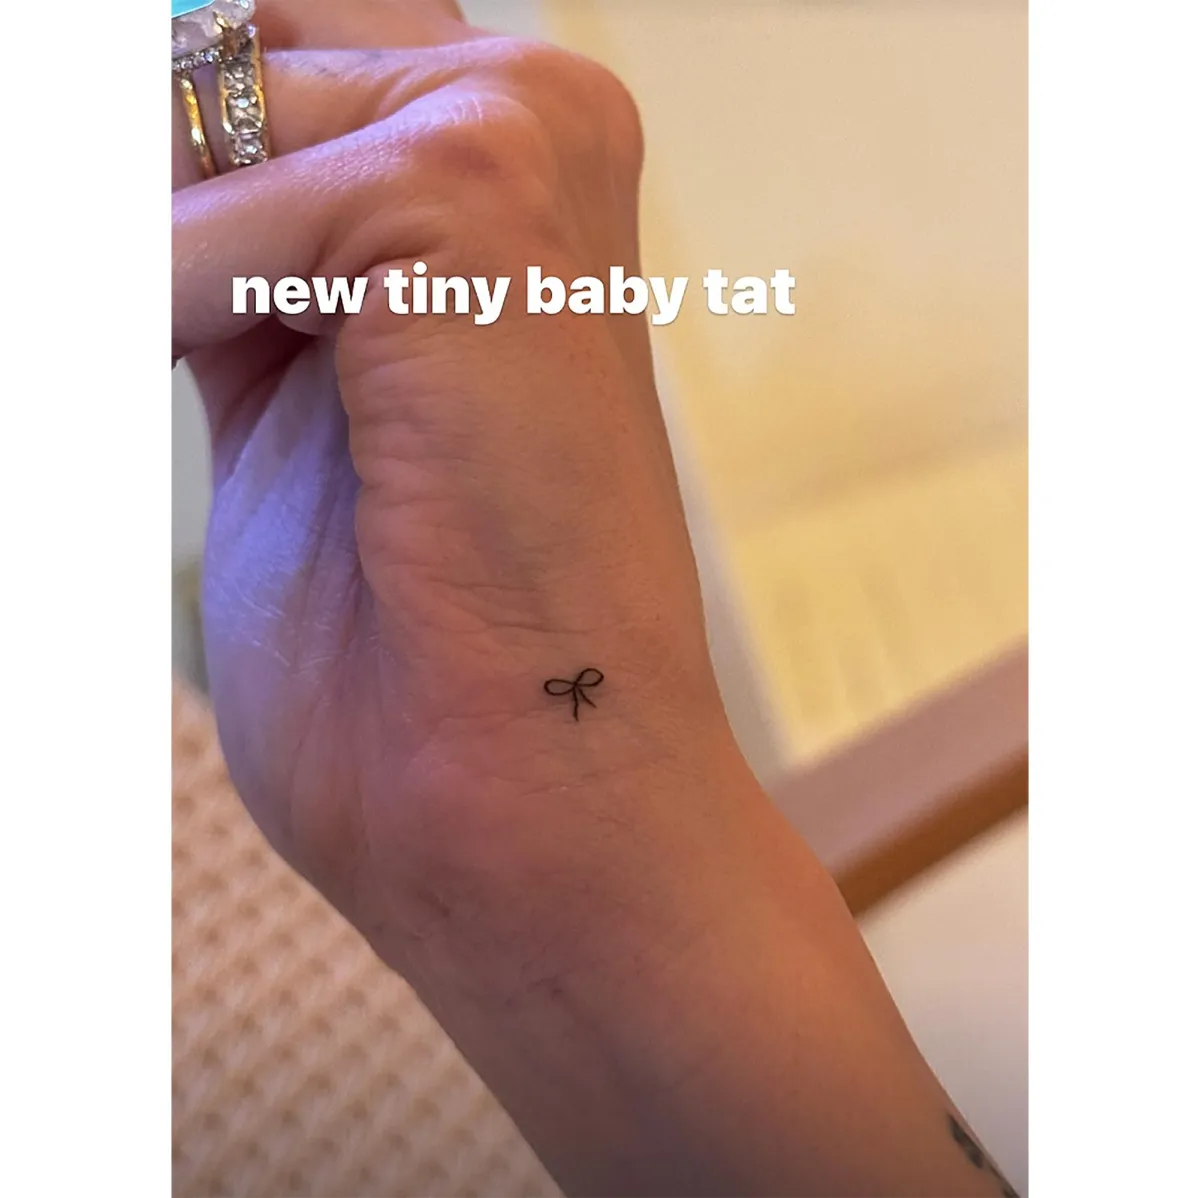 Хейли Бибер набила новую татуировку. Берите идею на заметку!